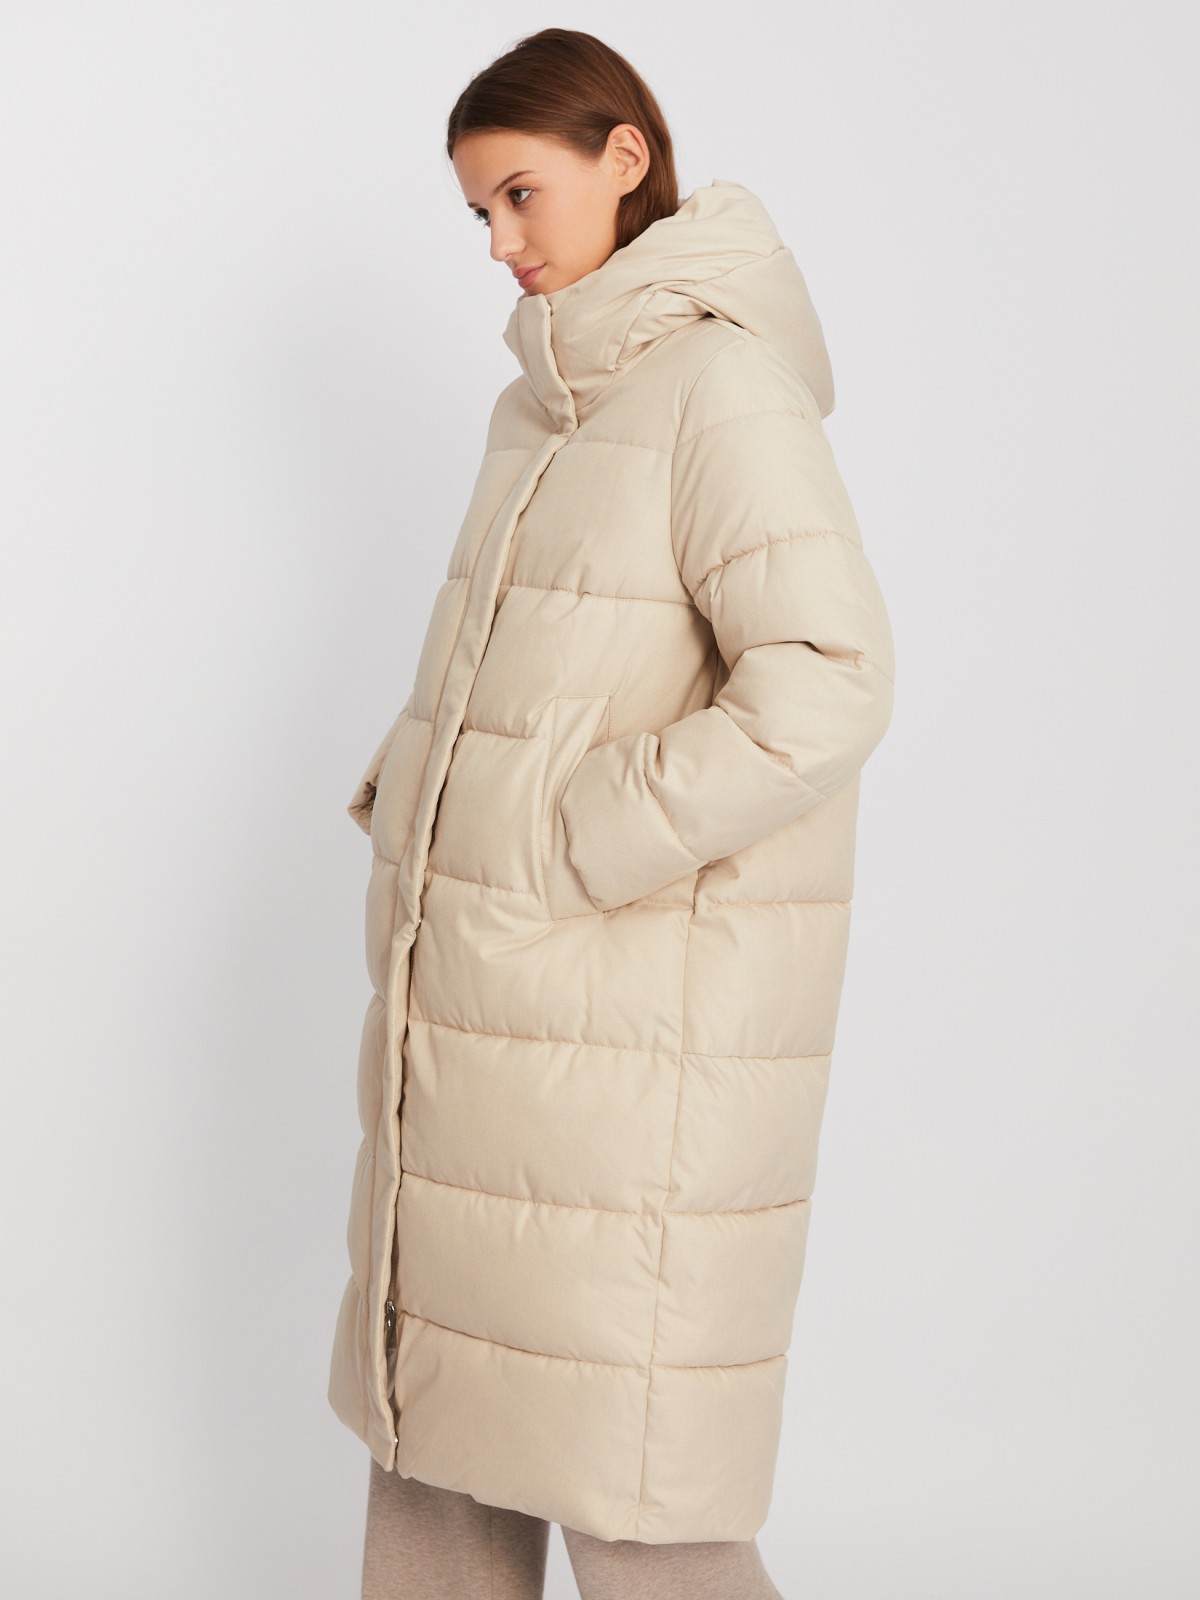 Тёплая длинная куртка-пальто с капюшоном zolla 02342520L044, цвет молоко, размер XS - фото 3